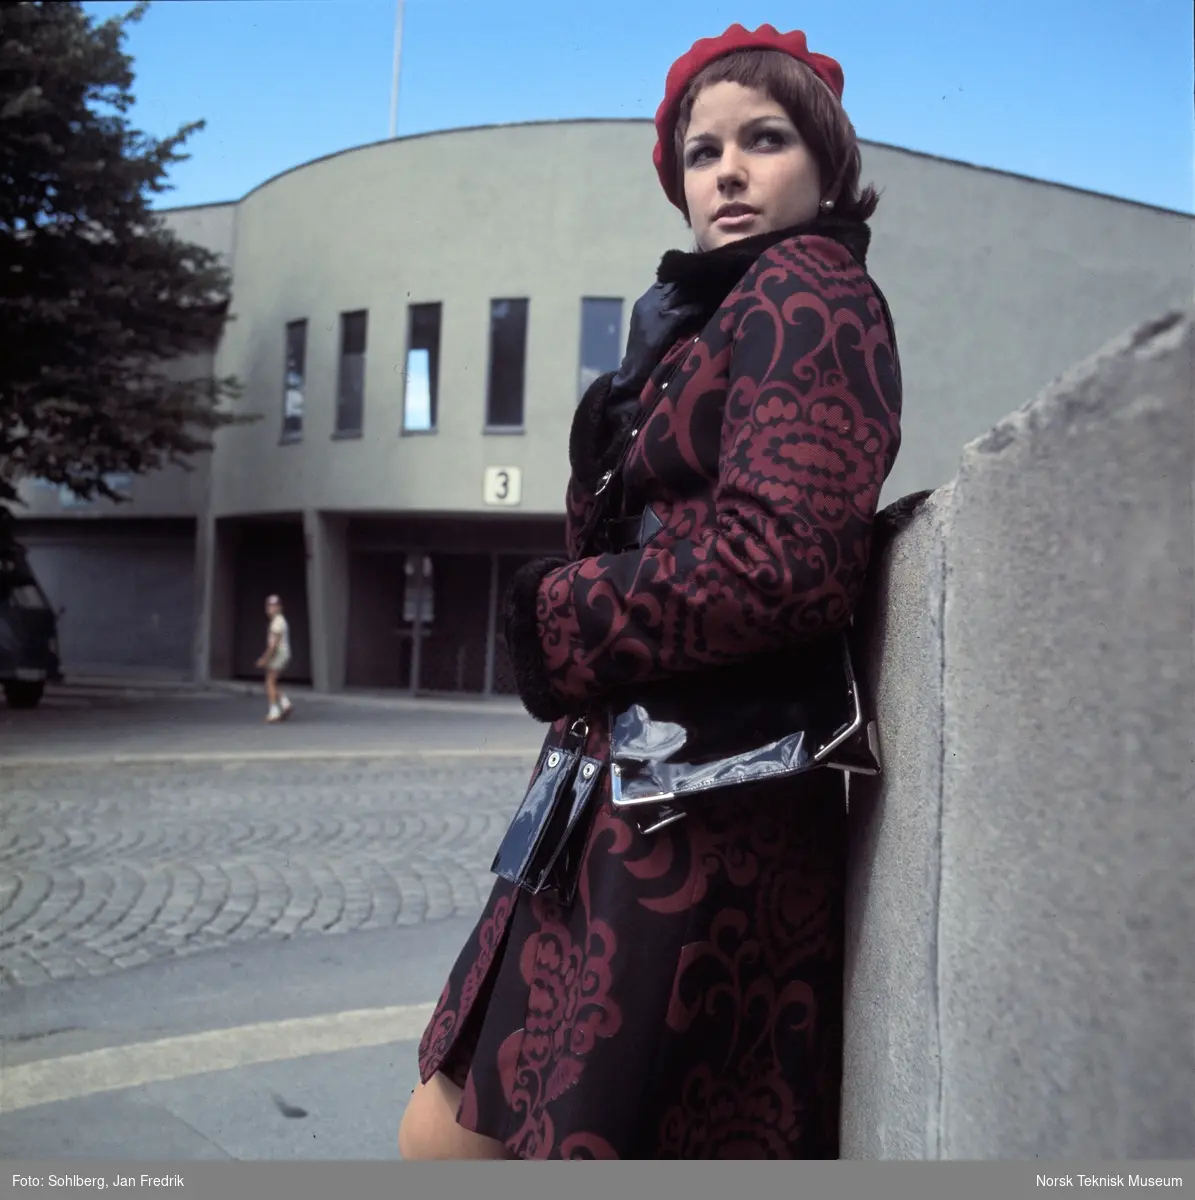 Motebilde, kvinne i mønstrete rød kåpe med alpelue, foran idrettsarena. Bildet er en del av en serie der noen er publisert i ukebladet Det Nye 1969, nr. 38.